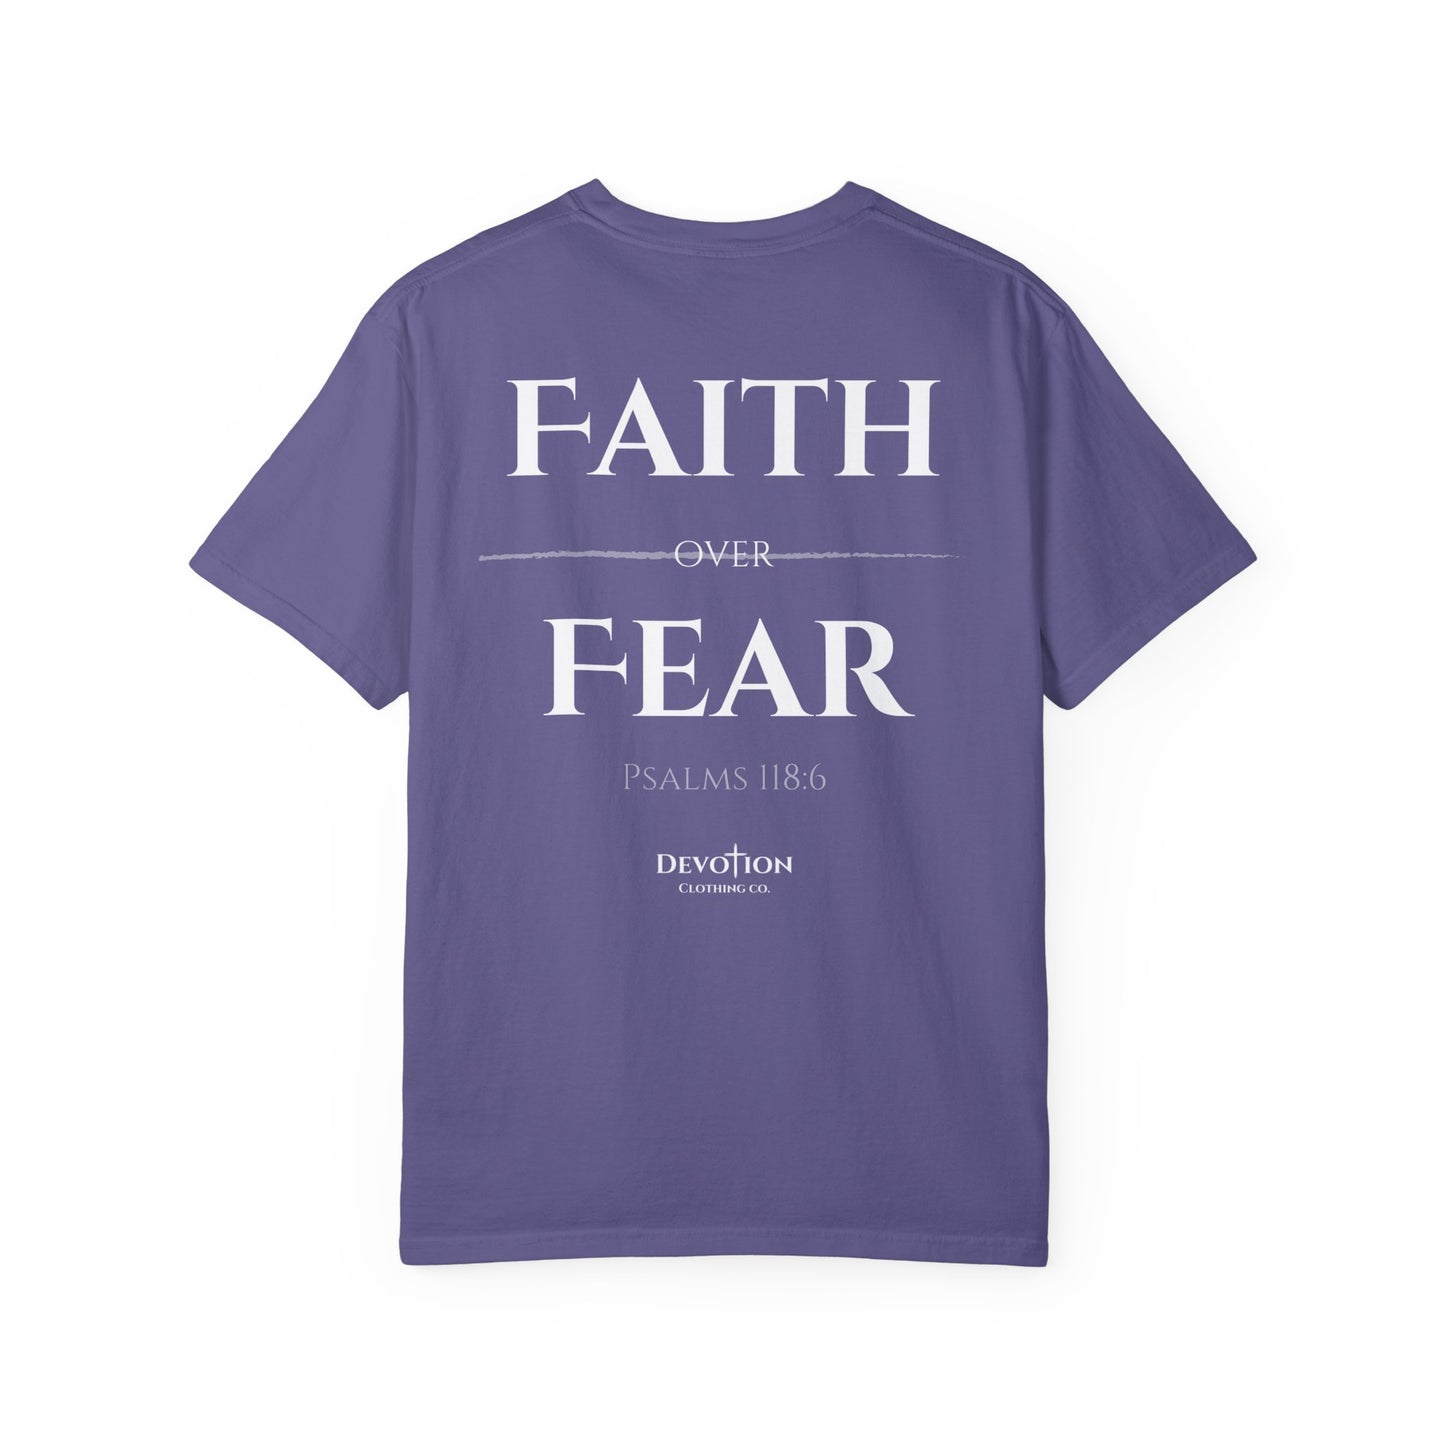 Faith Over Fear Unisex Tee